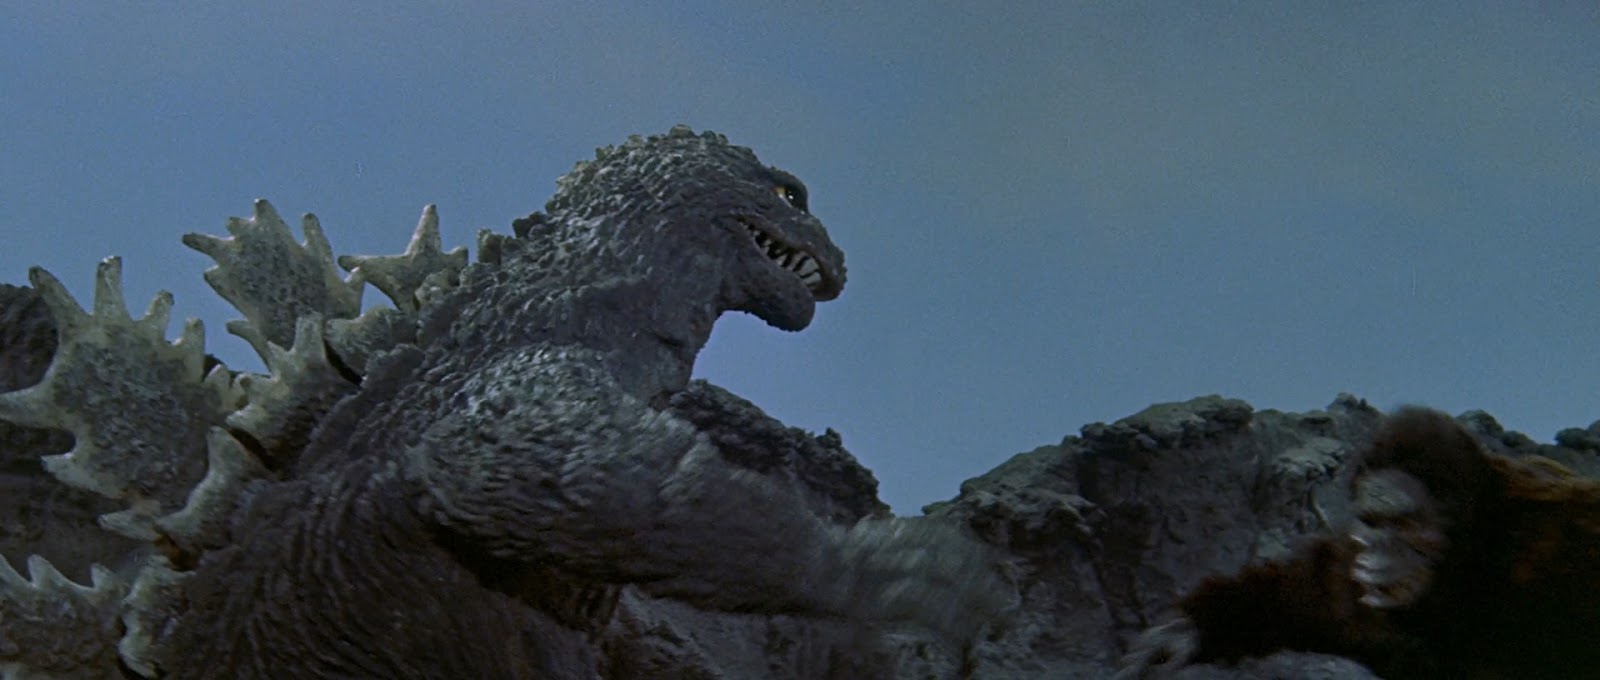 King Kong vs. Godzilla (ver. USA) 1963|1080p